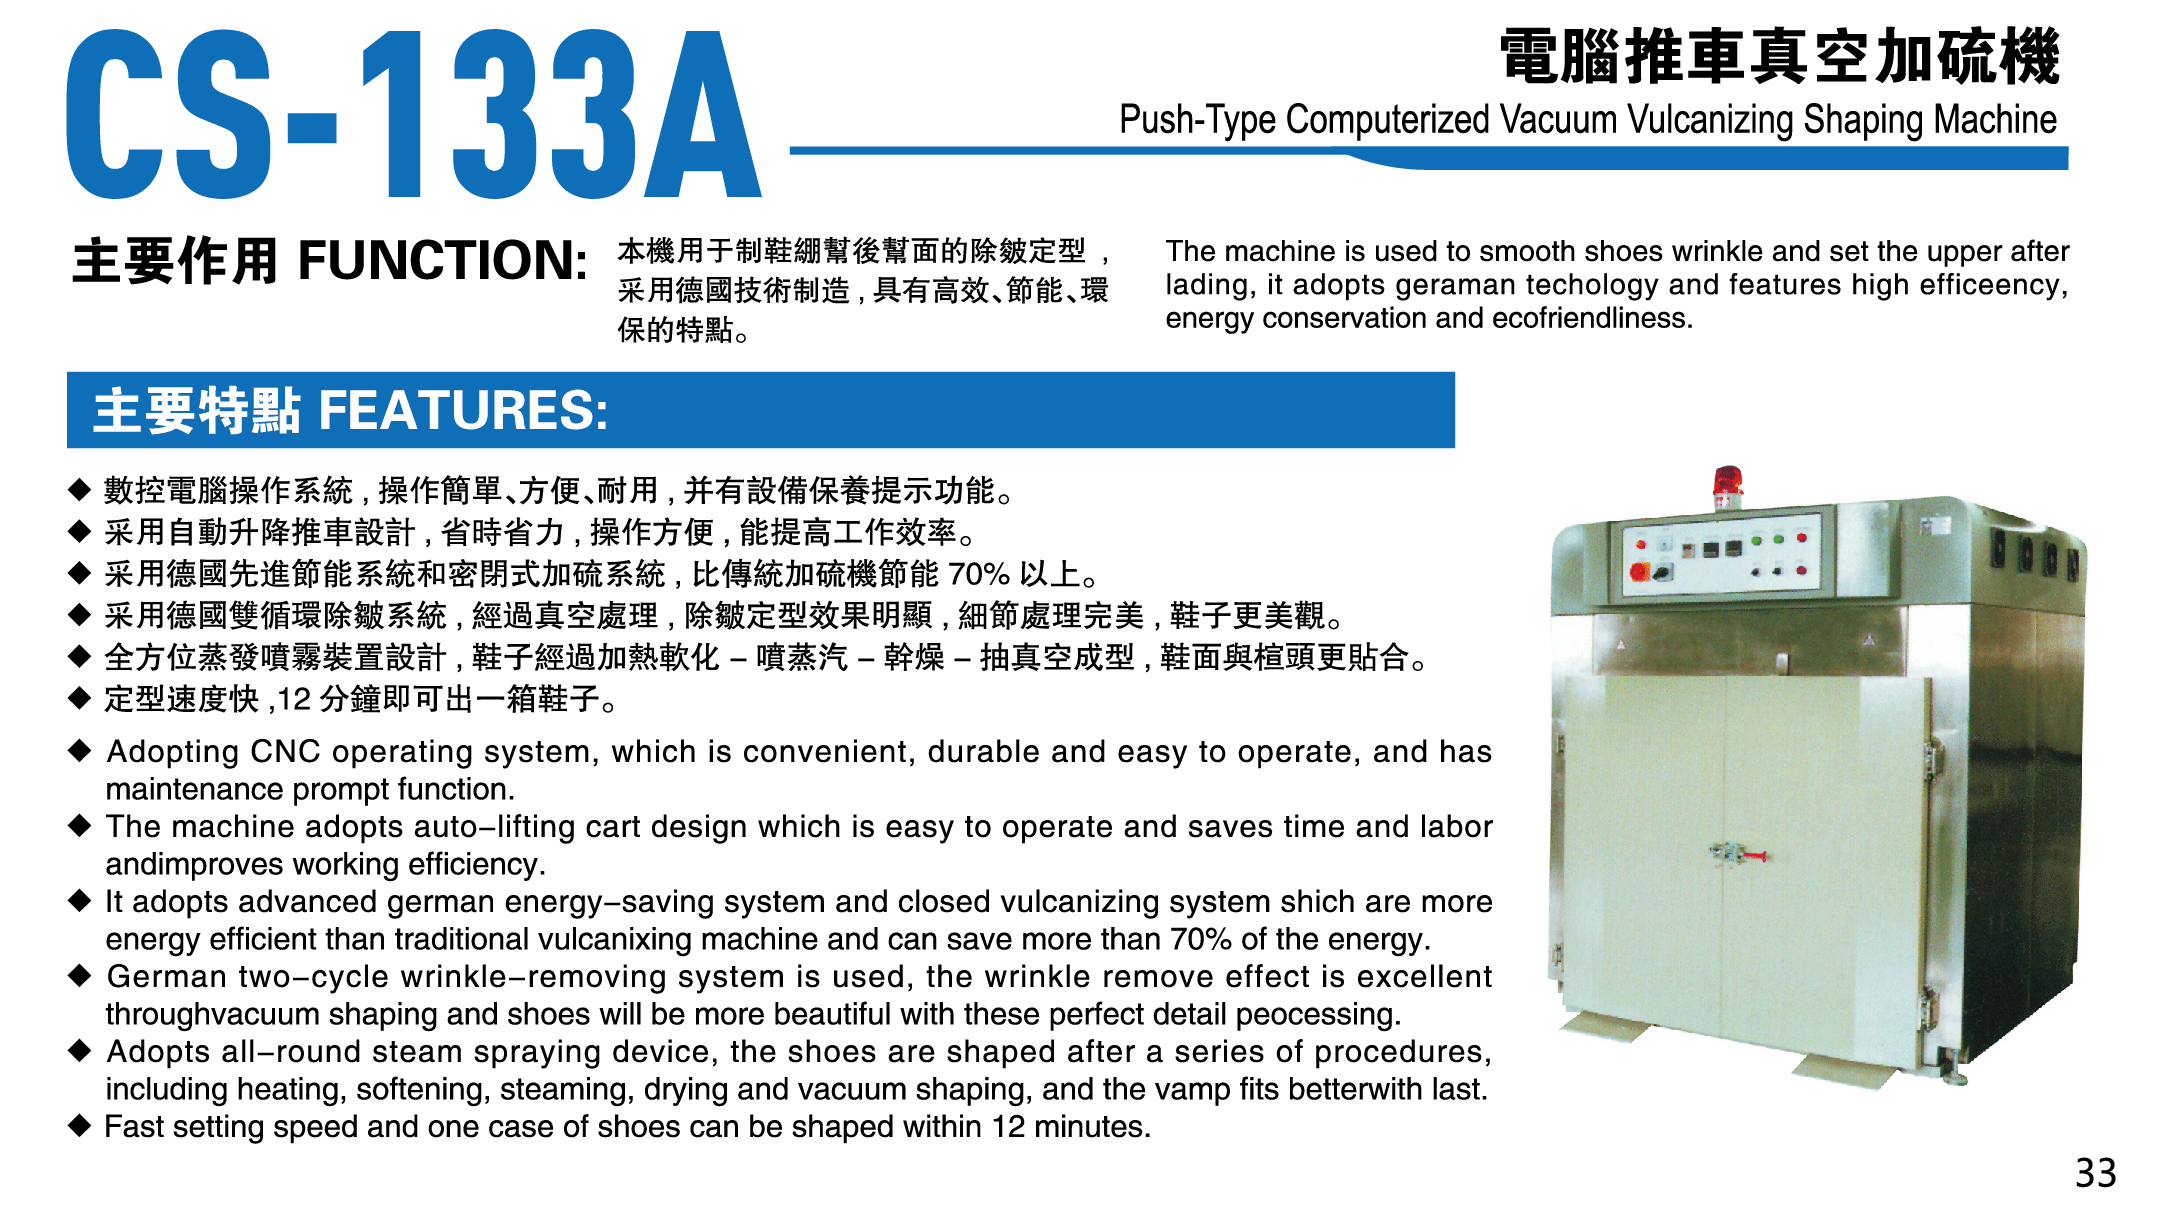 CS-133A